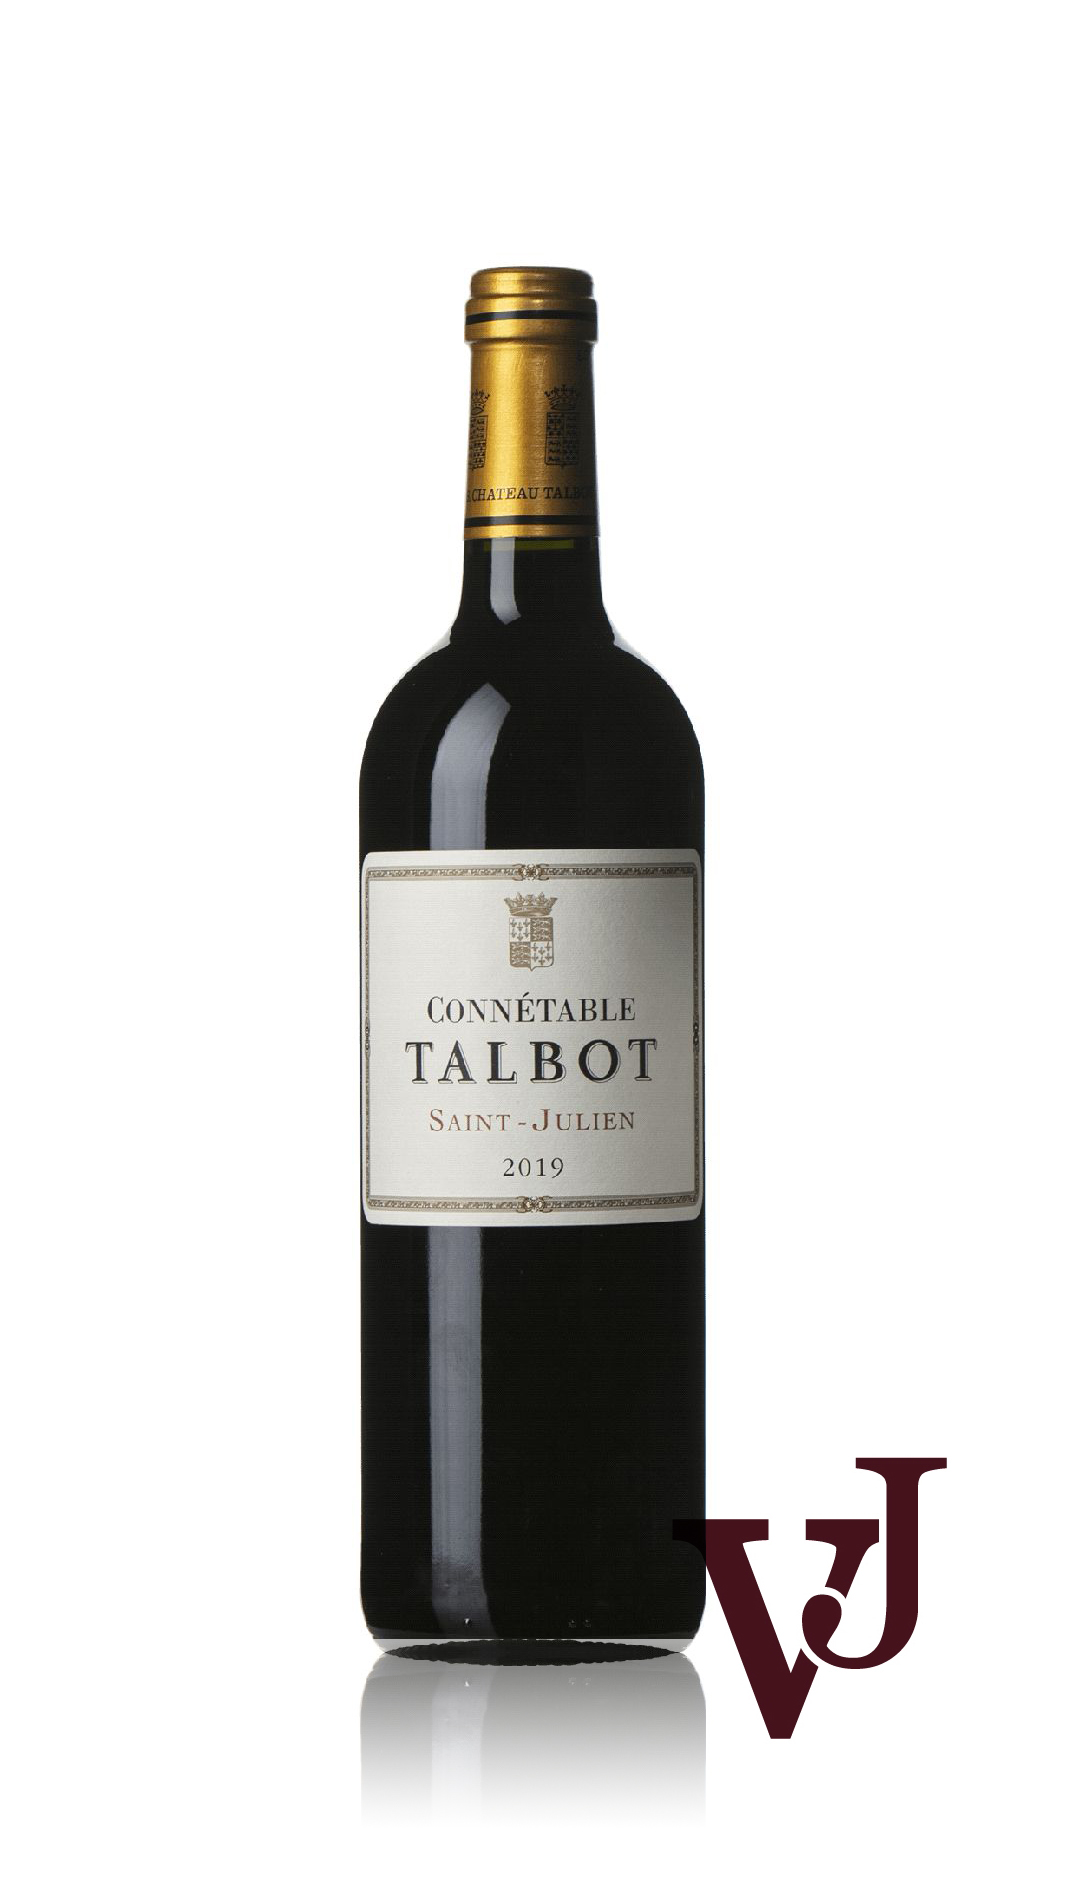 Rött Vin - Connétable Talbot artikel nummer 9499901 från producenten Château Talbot från området Frankrike